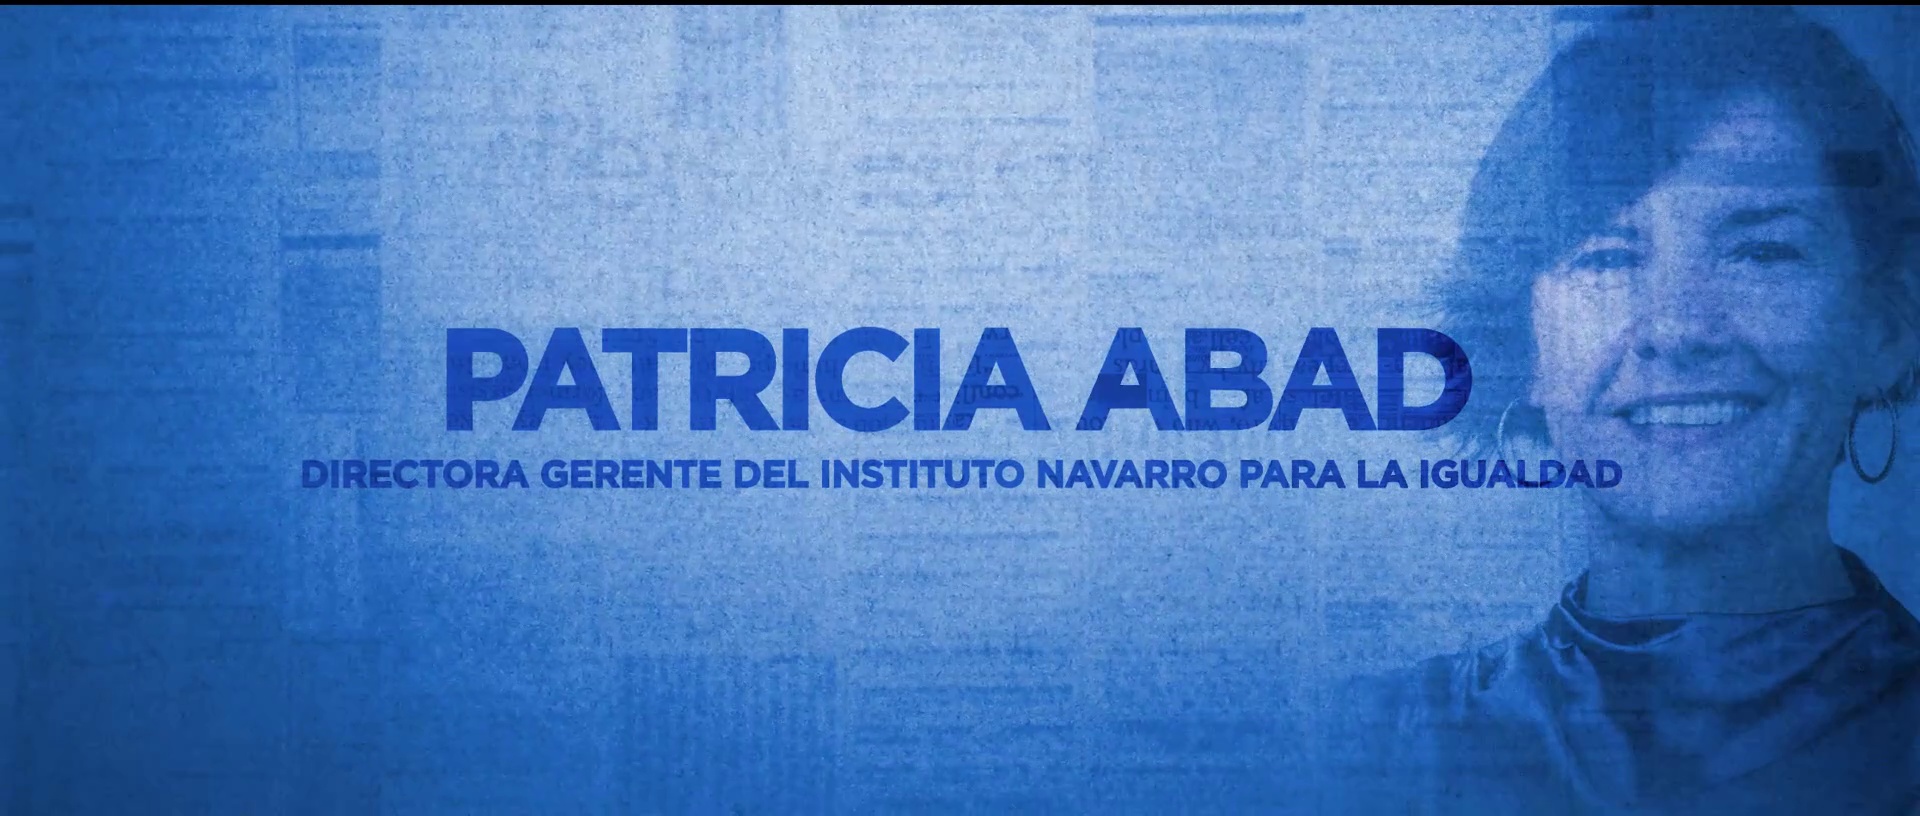 Este martes a las 21:40 horas, 'Cara a Cara' con Patricia Abad, directora gerente del Instituto Navarro para la Igualdad